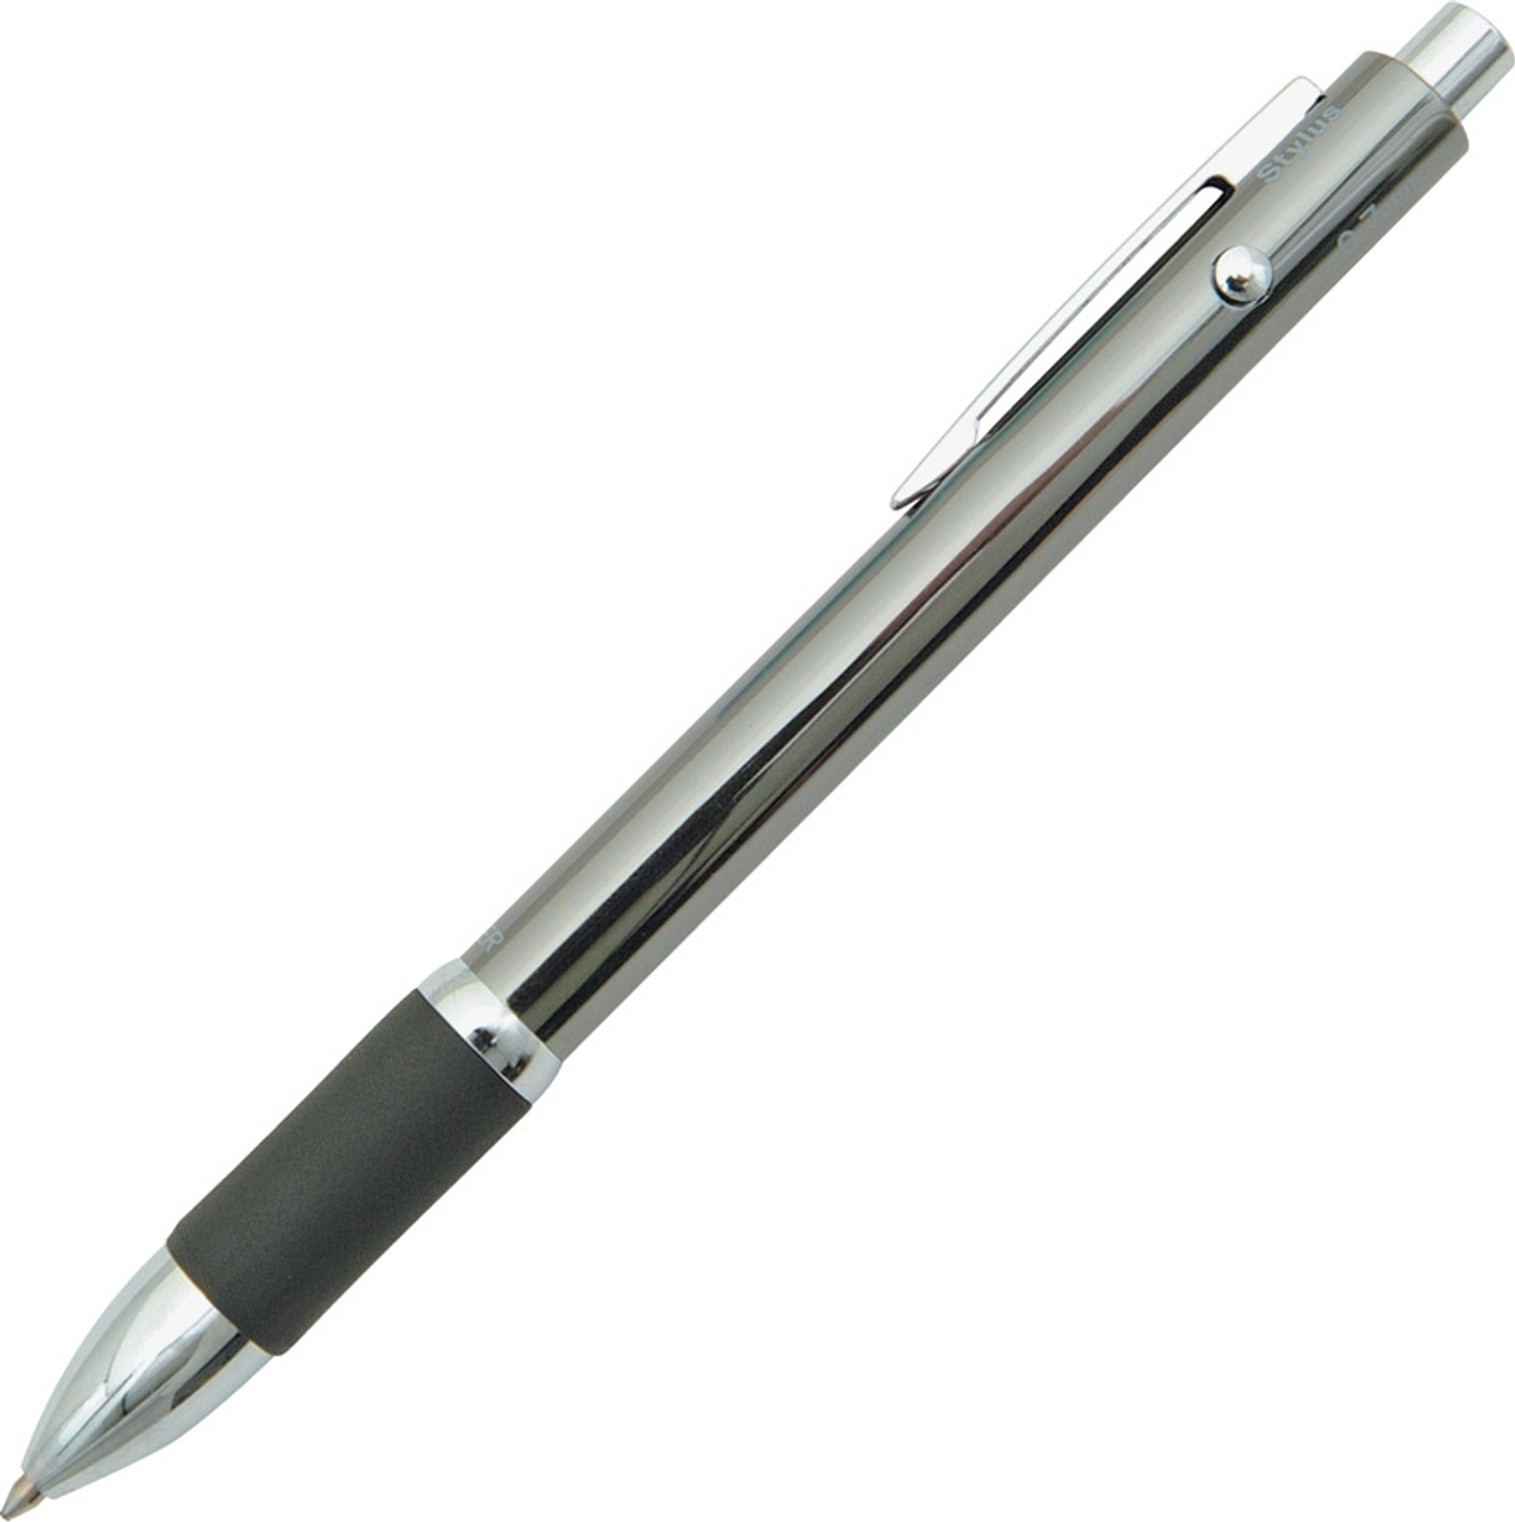 Q-4 Quad Function Pen